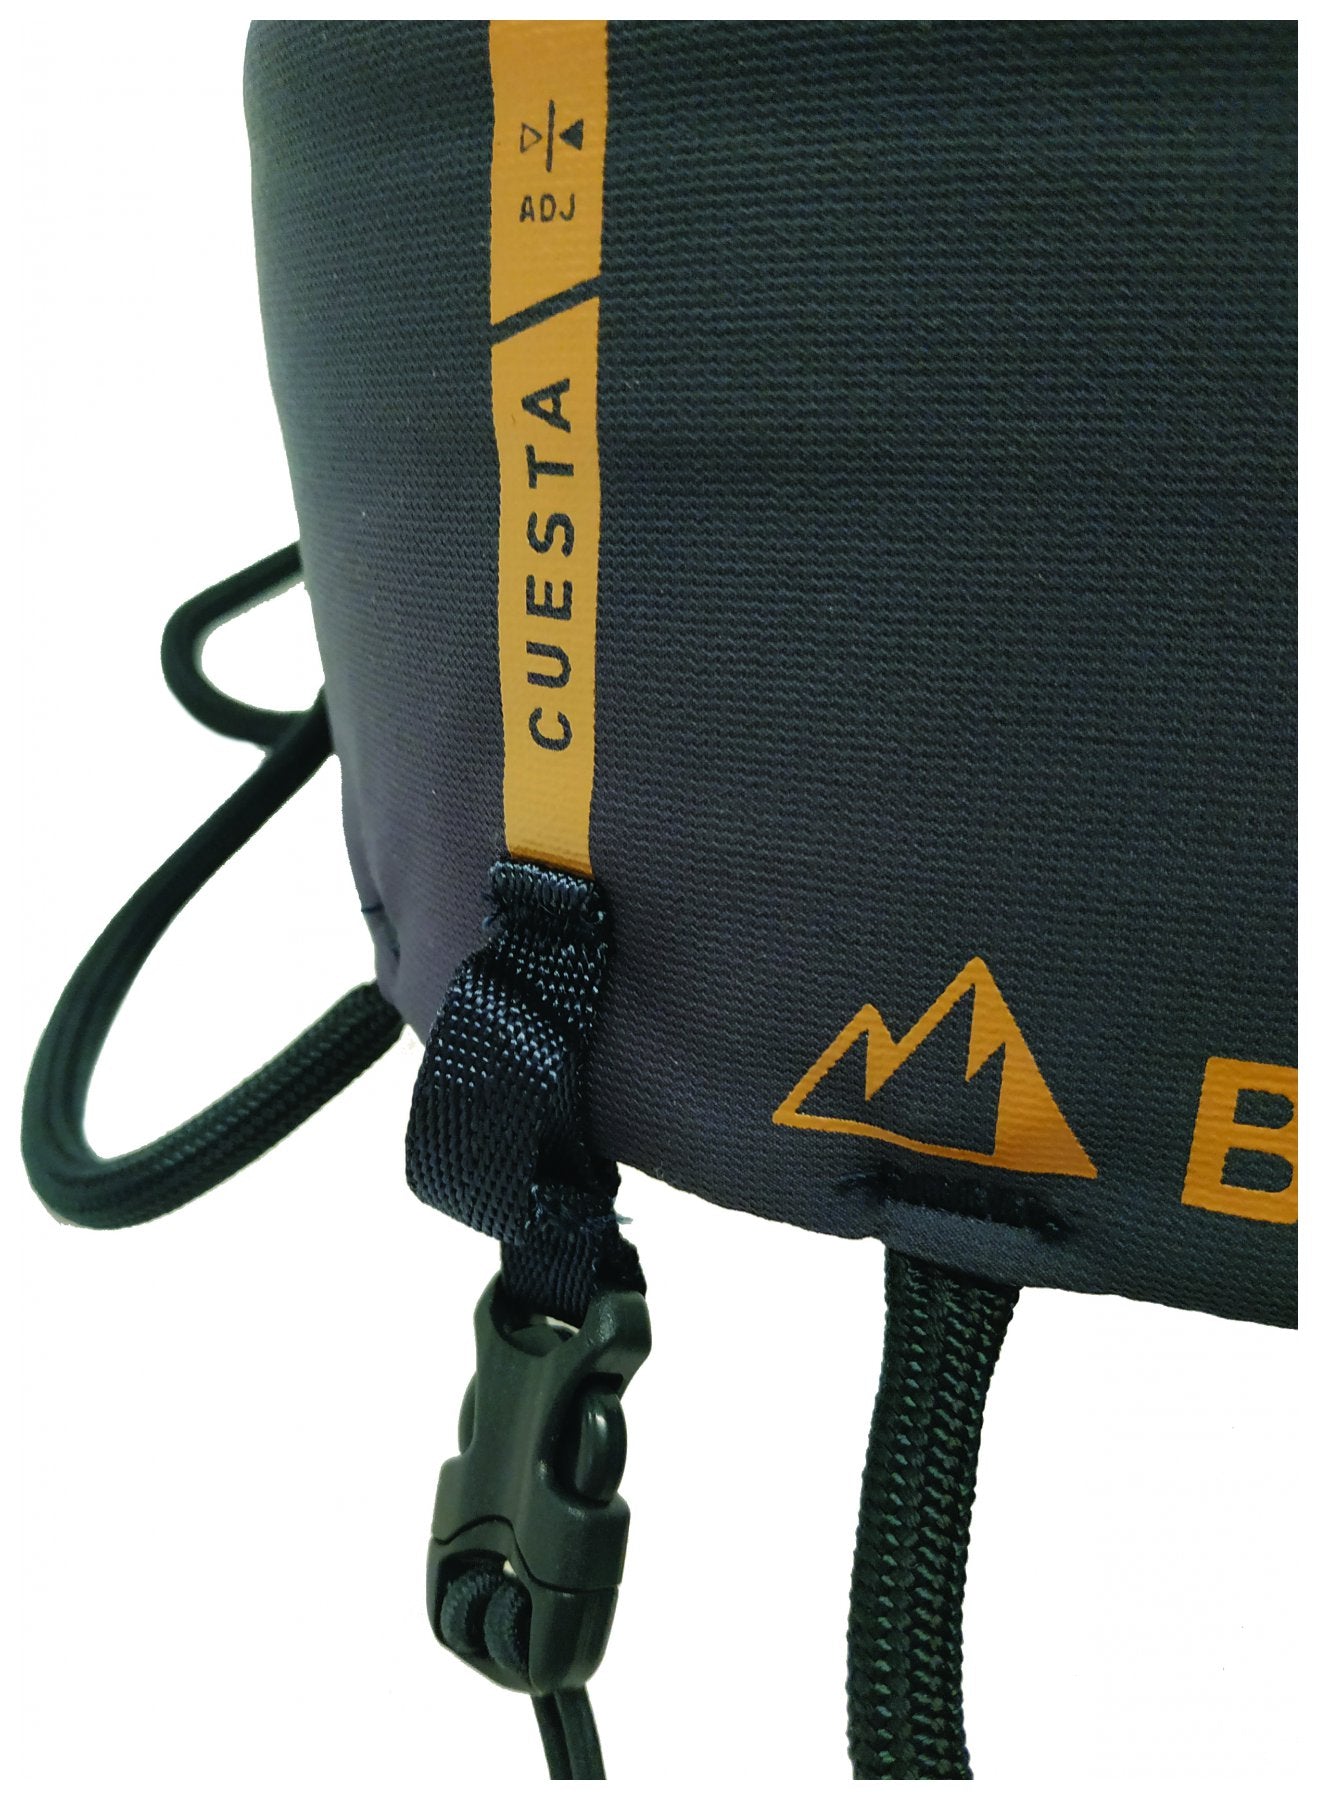 Cuesta Adjust, full adjustable climbing harness